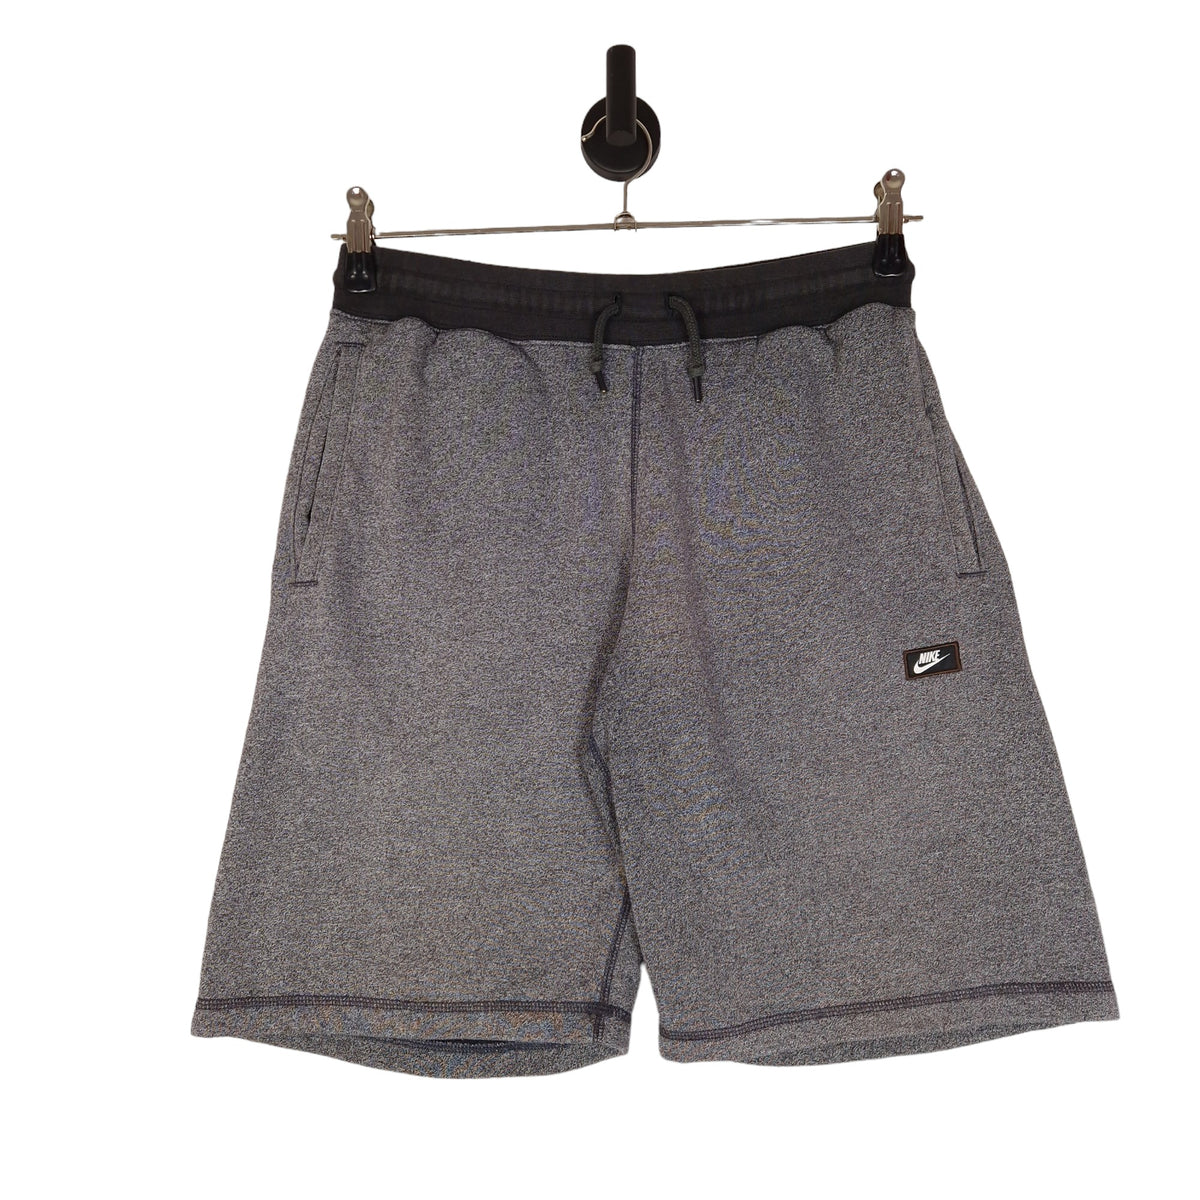 Nike Sweat Shorts  - Size Medium